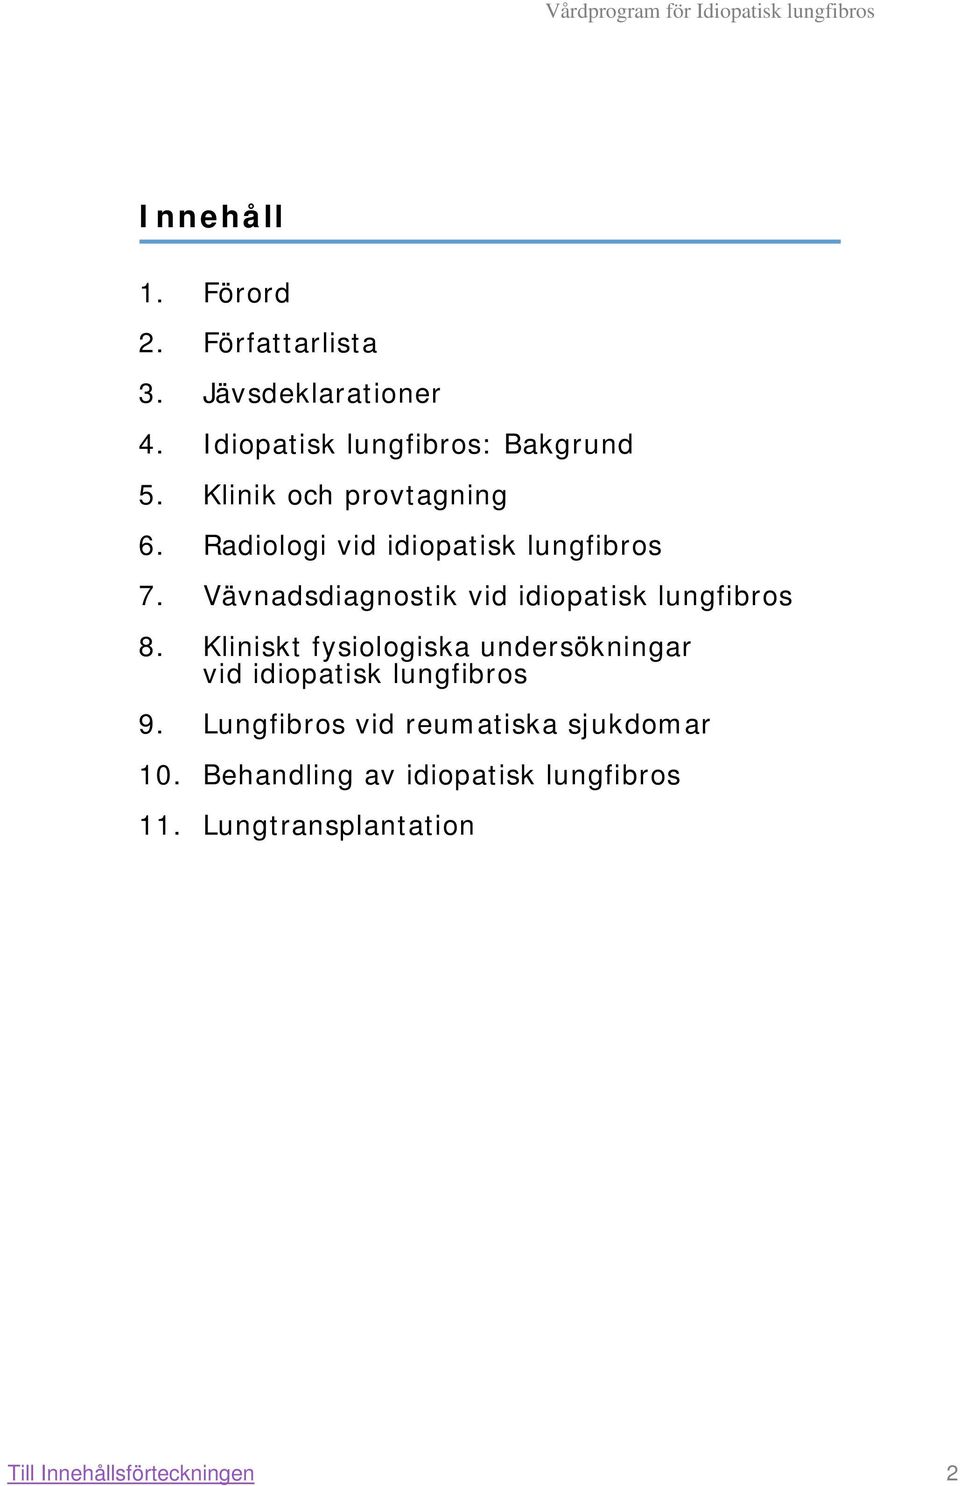 Vävnadsdiagnostik vid idiopatisk lungfibros 8.